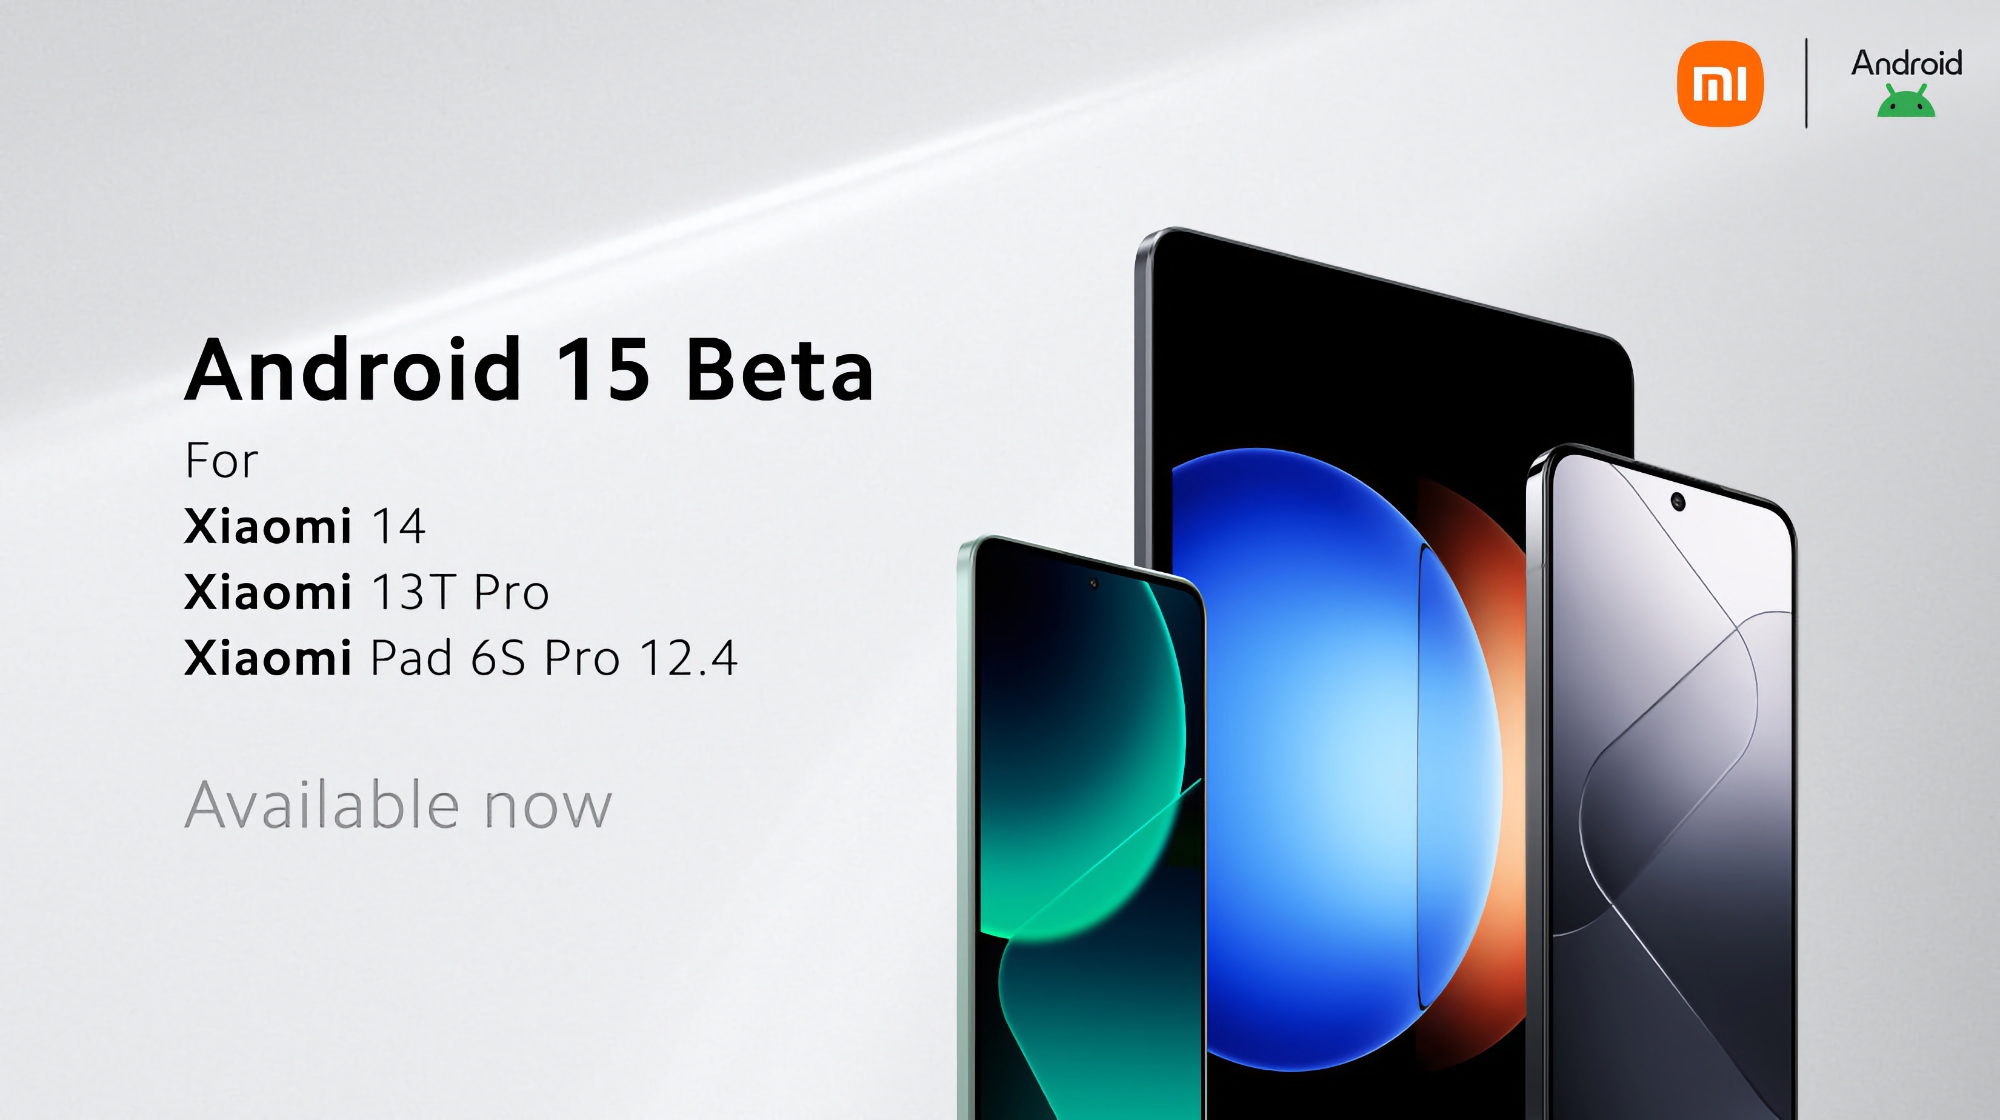 Le Xiaomi 14, le Xiaomi 13T Pro et le Xiaomi Pad 6S Pro ont reçu la version bêta d'Android 15.